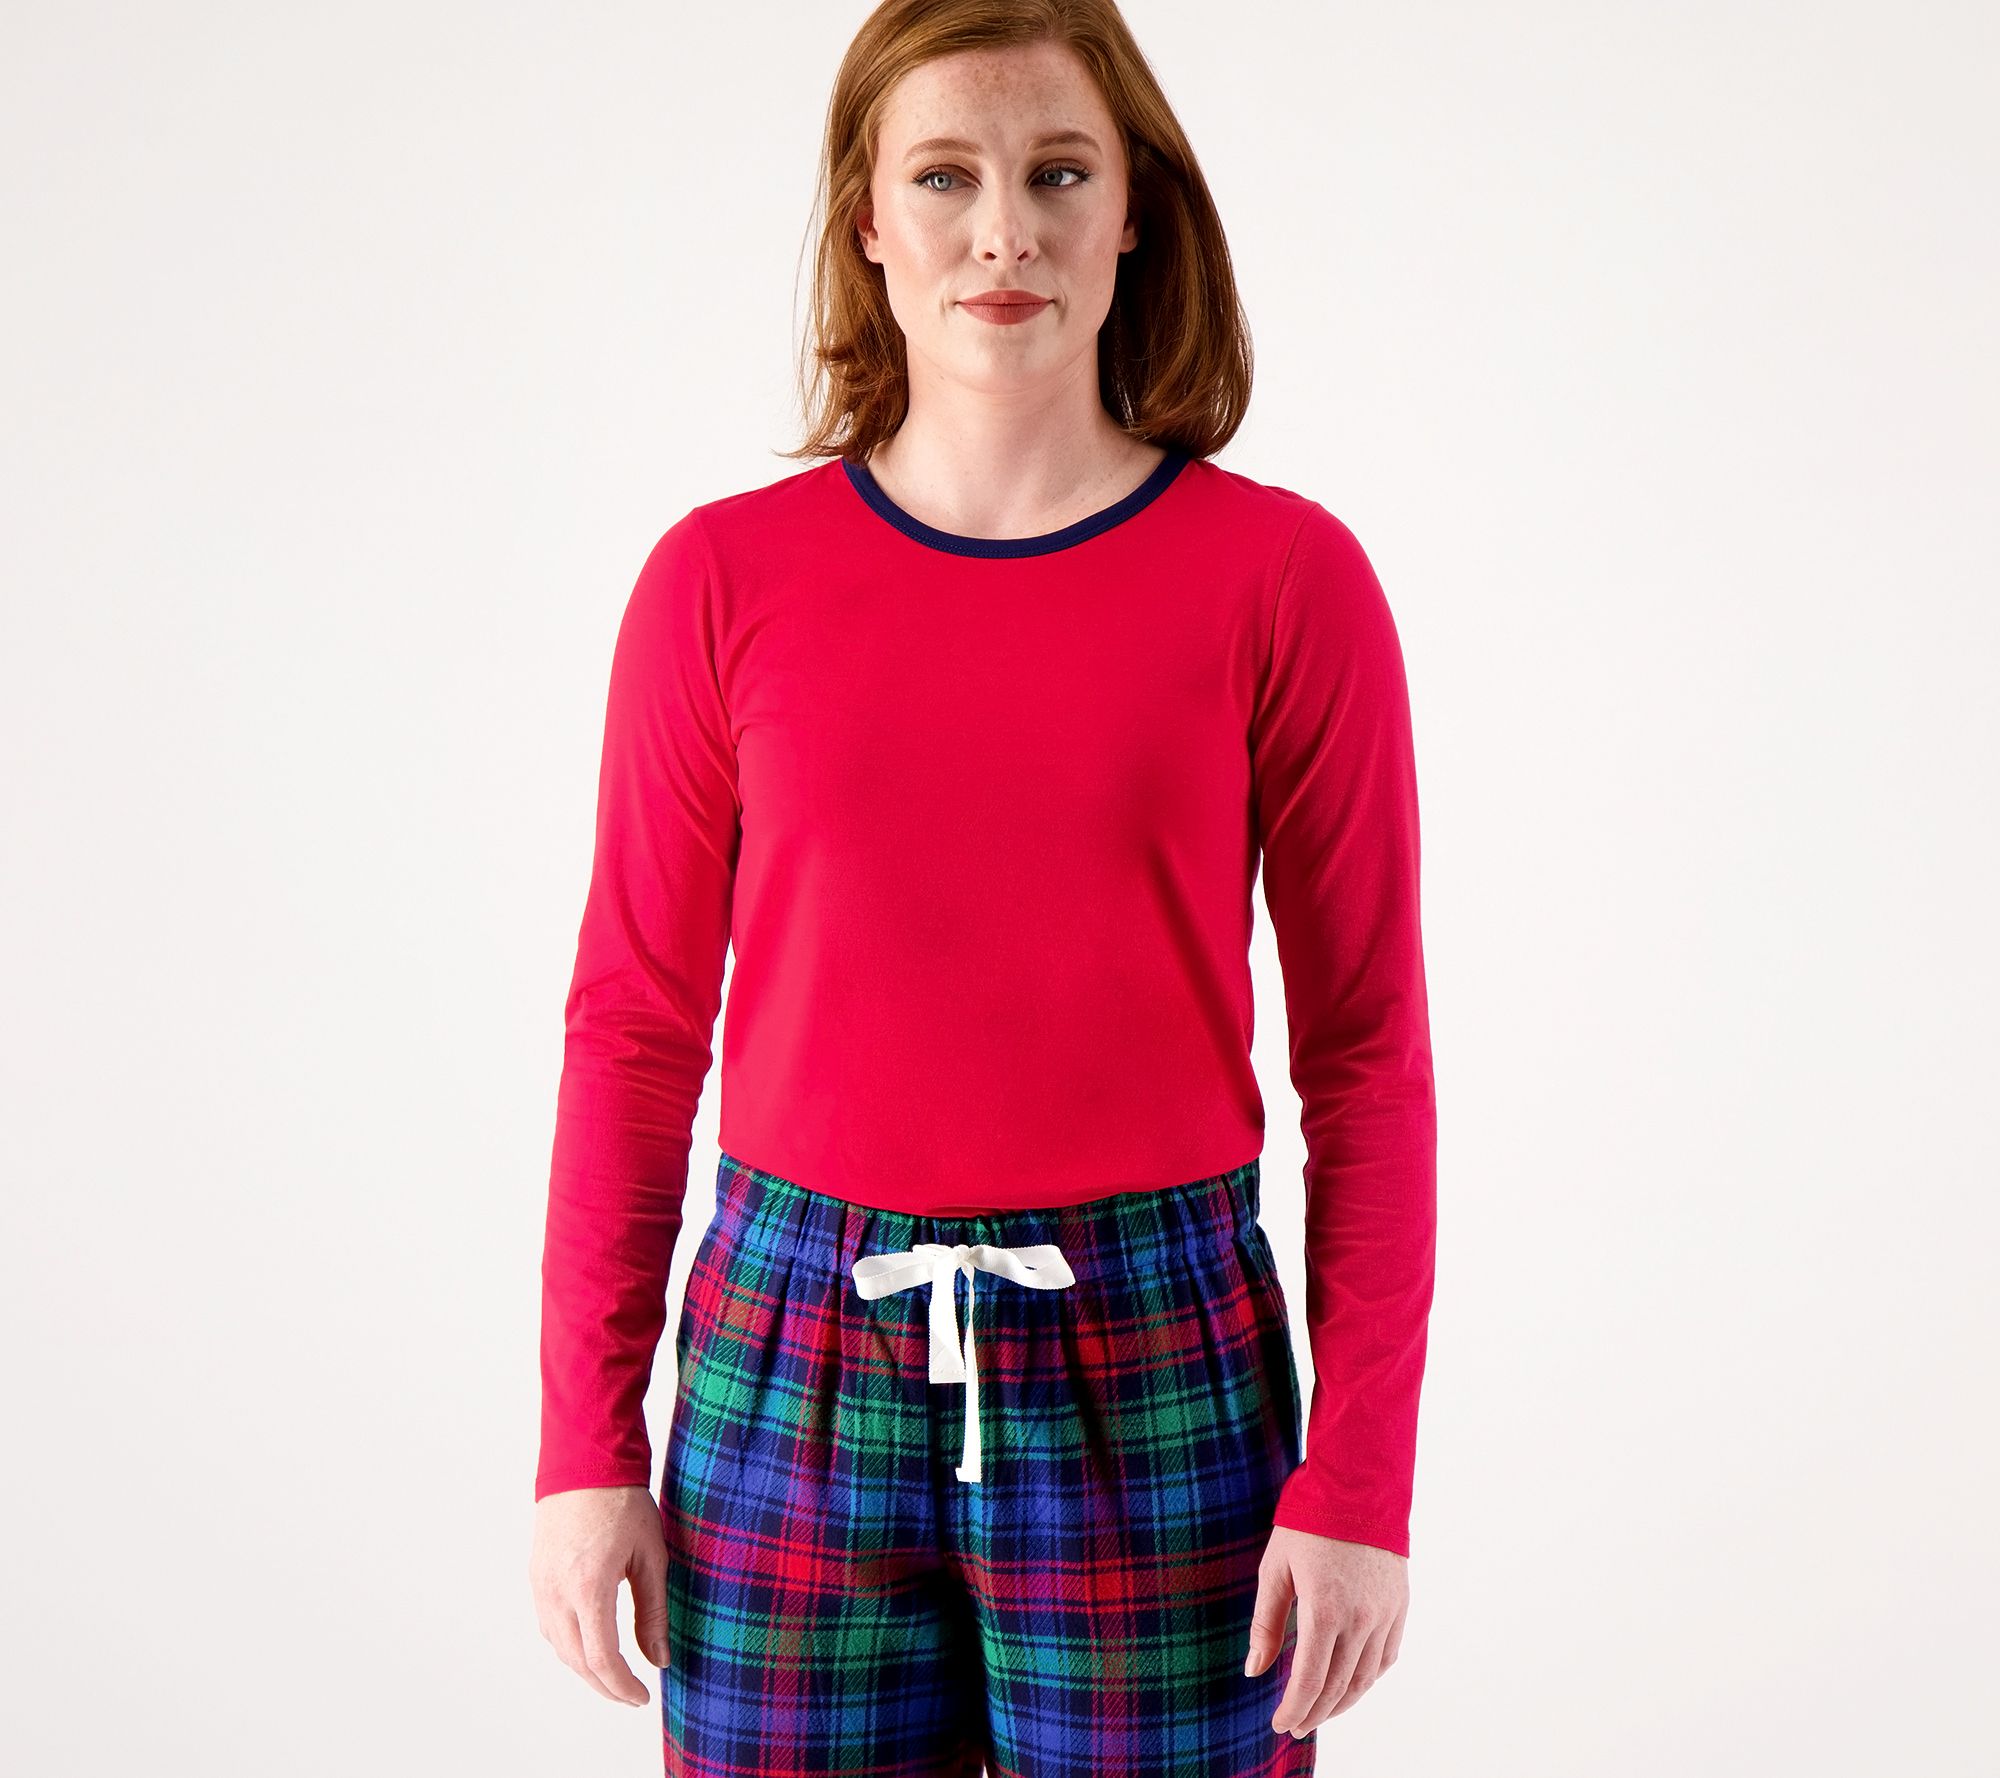 Lands' End Women's Knit Top & Flannel Pants Pajama Set 